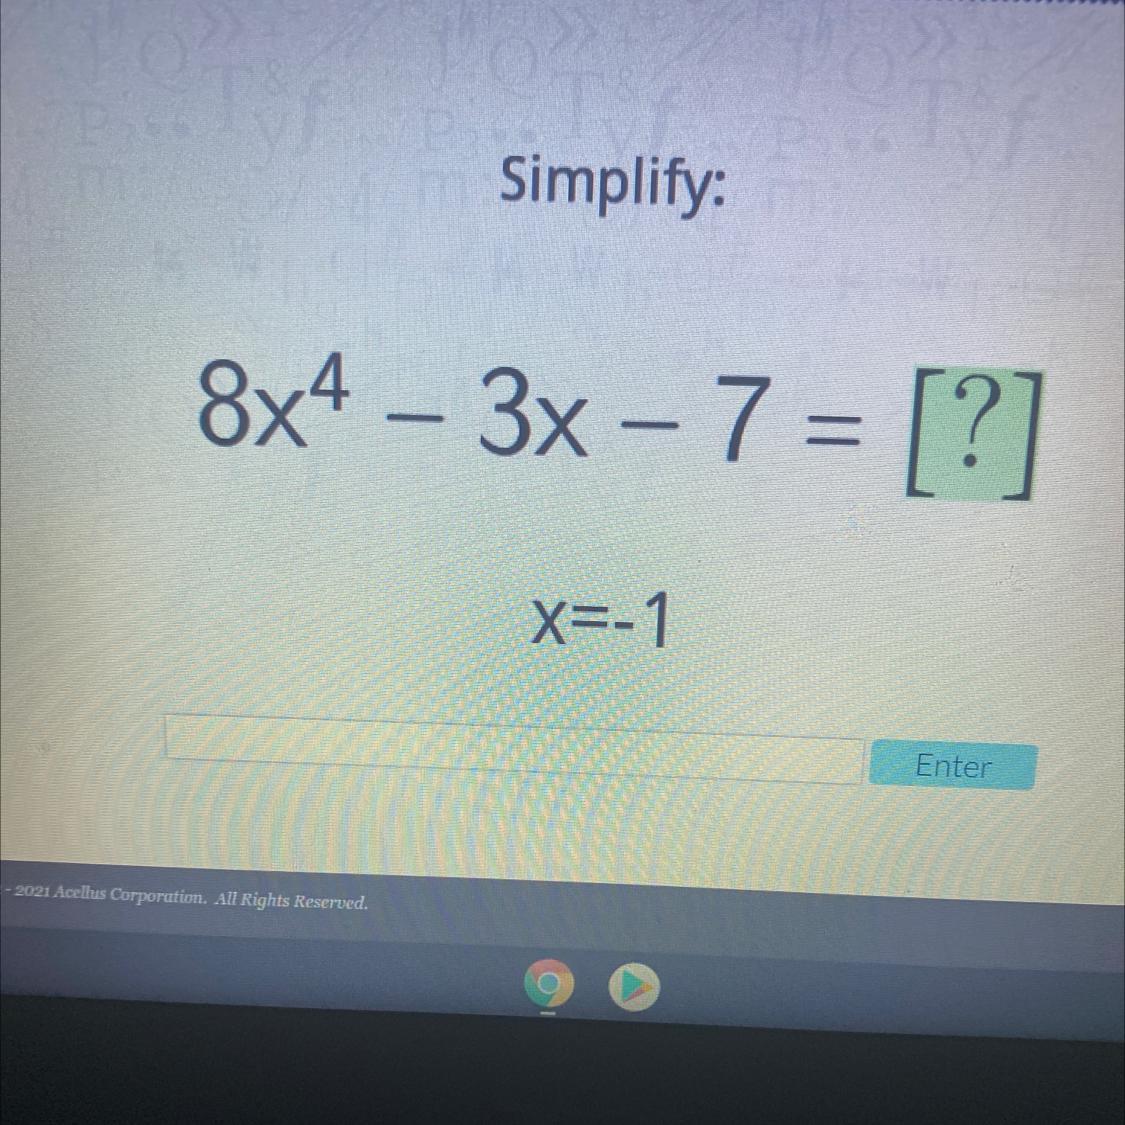 Simplify:8x4 3x 7 = [?]x=-1